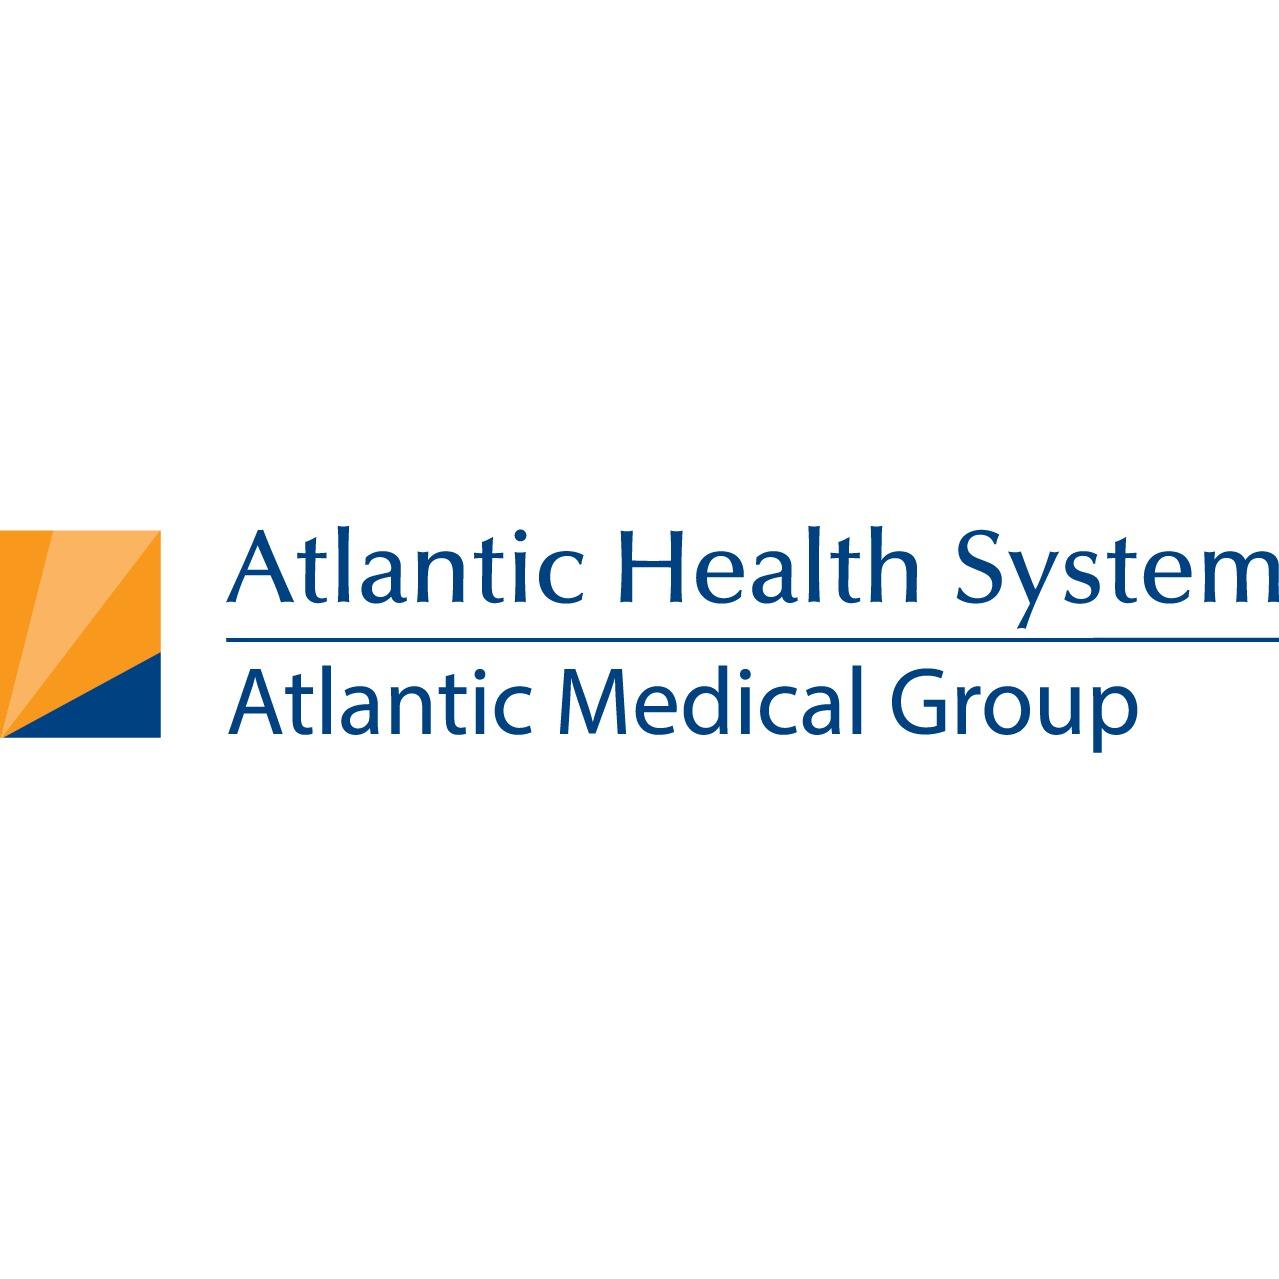 Atlantic Medical Group